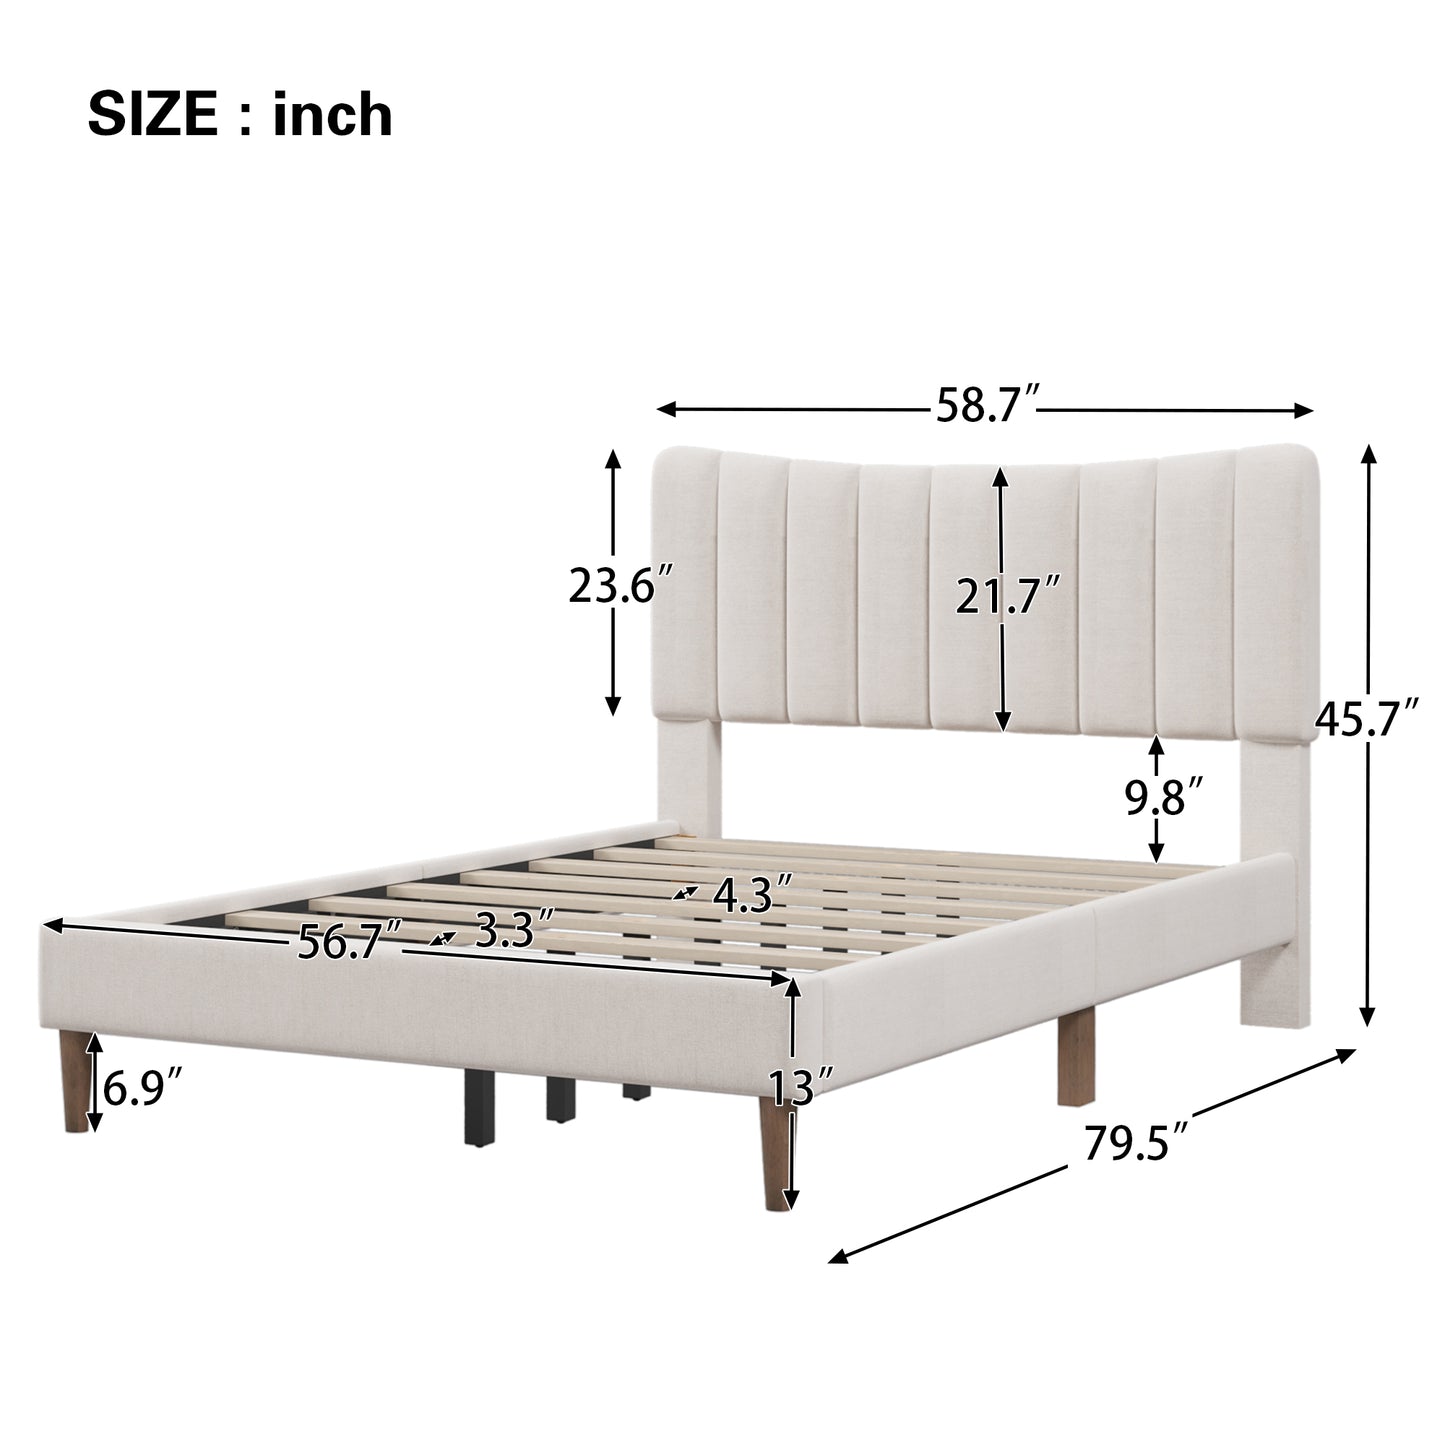 Bellemave Upholstered Platform Bed Frame with Vertical Channel Tufted Headboard